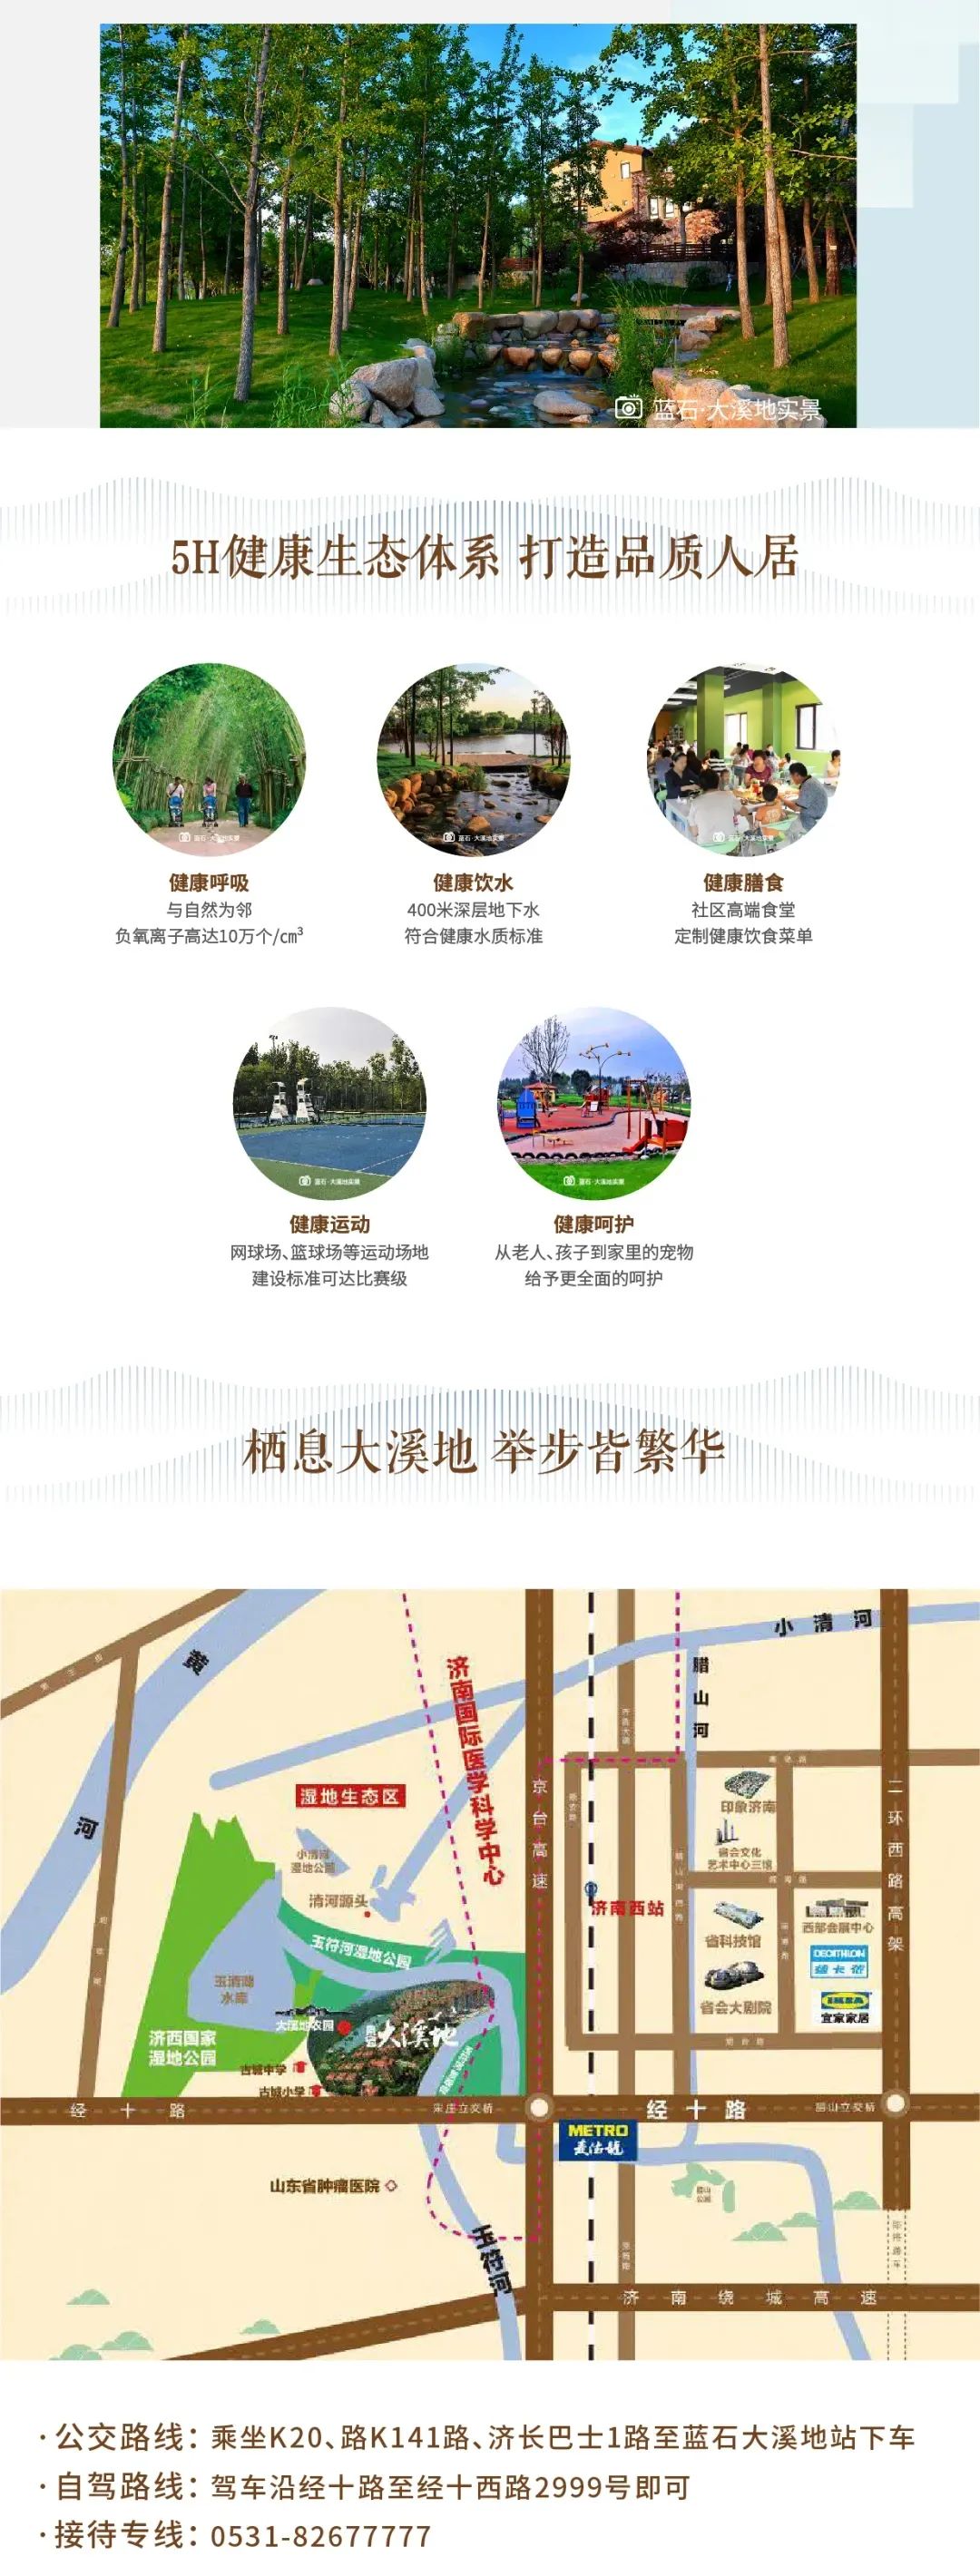 济南蓝石大溪地国潮文化节火热举办，10月10日“瓷瓶彩绘”手作活动上新